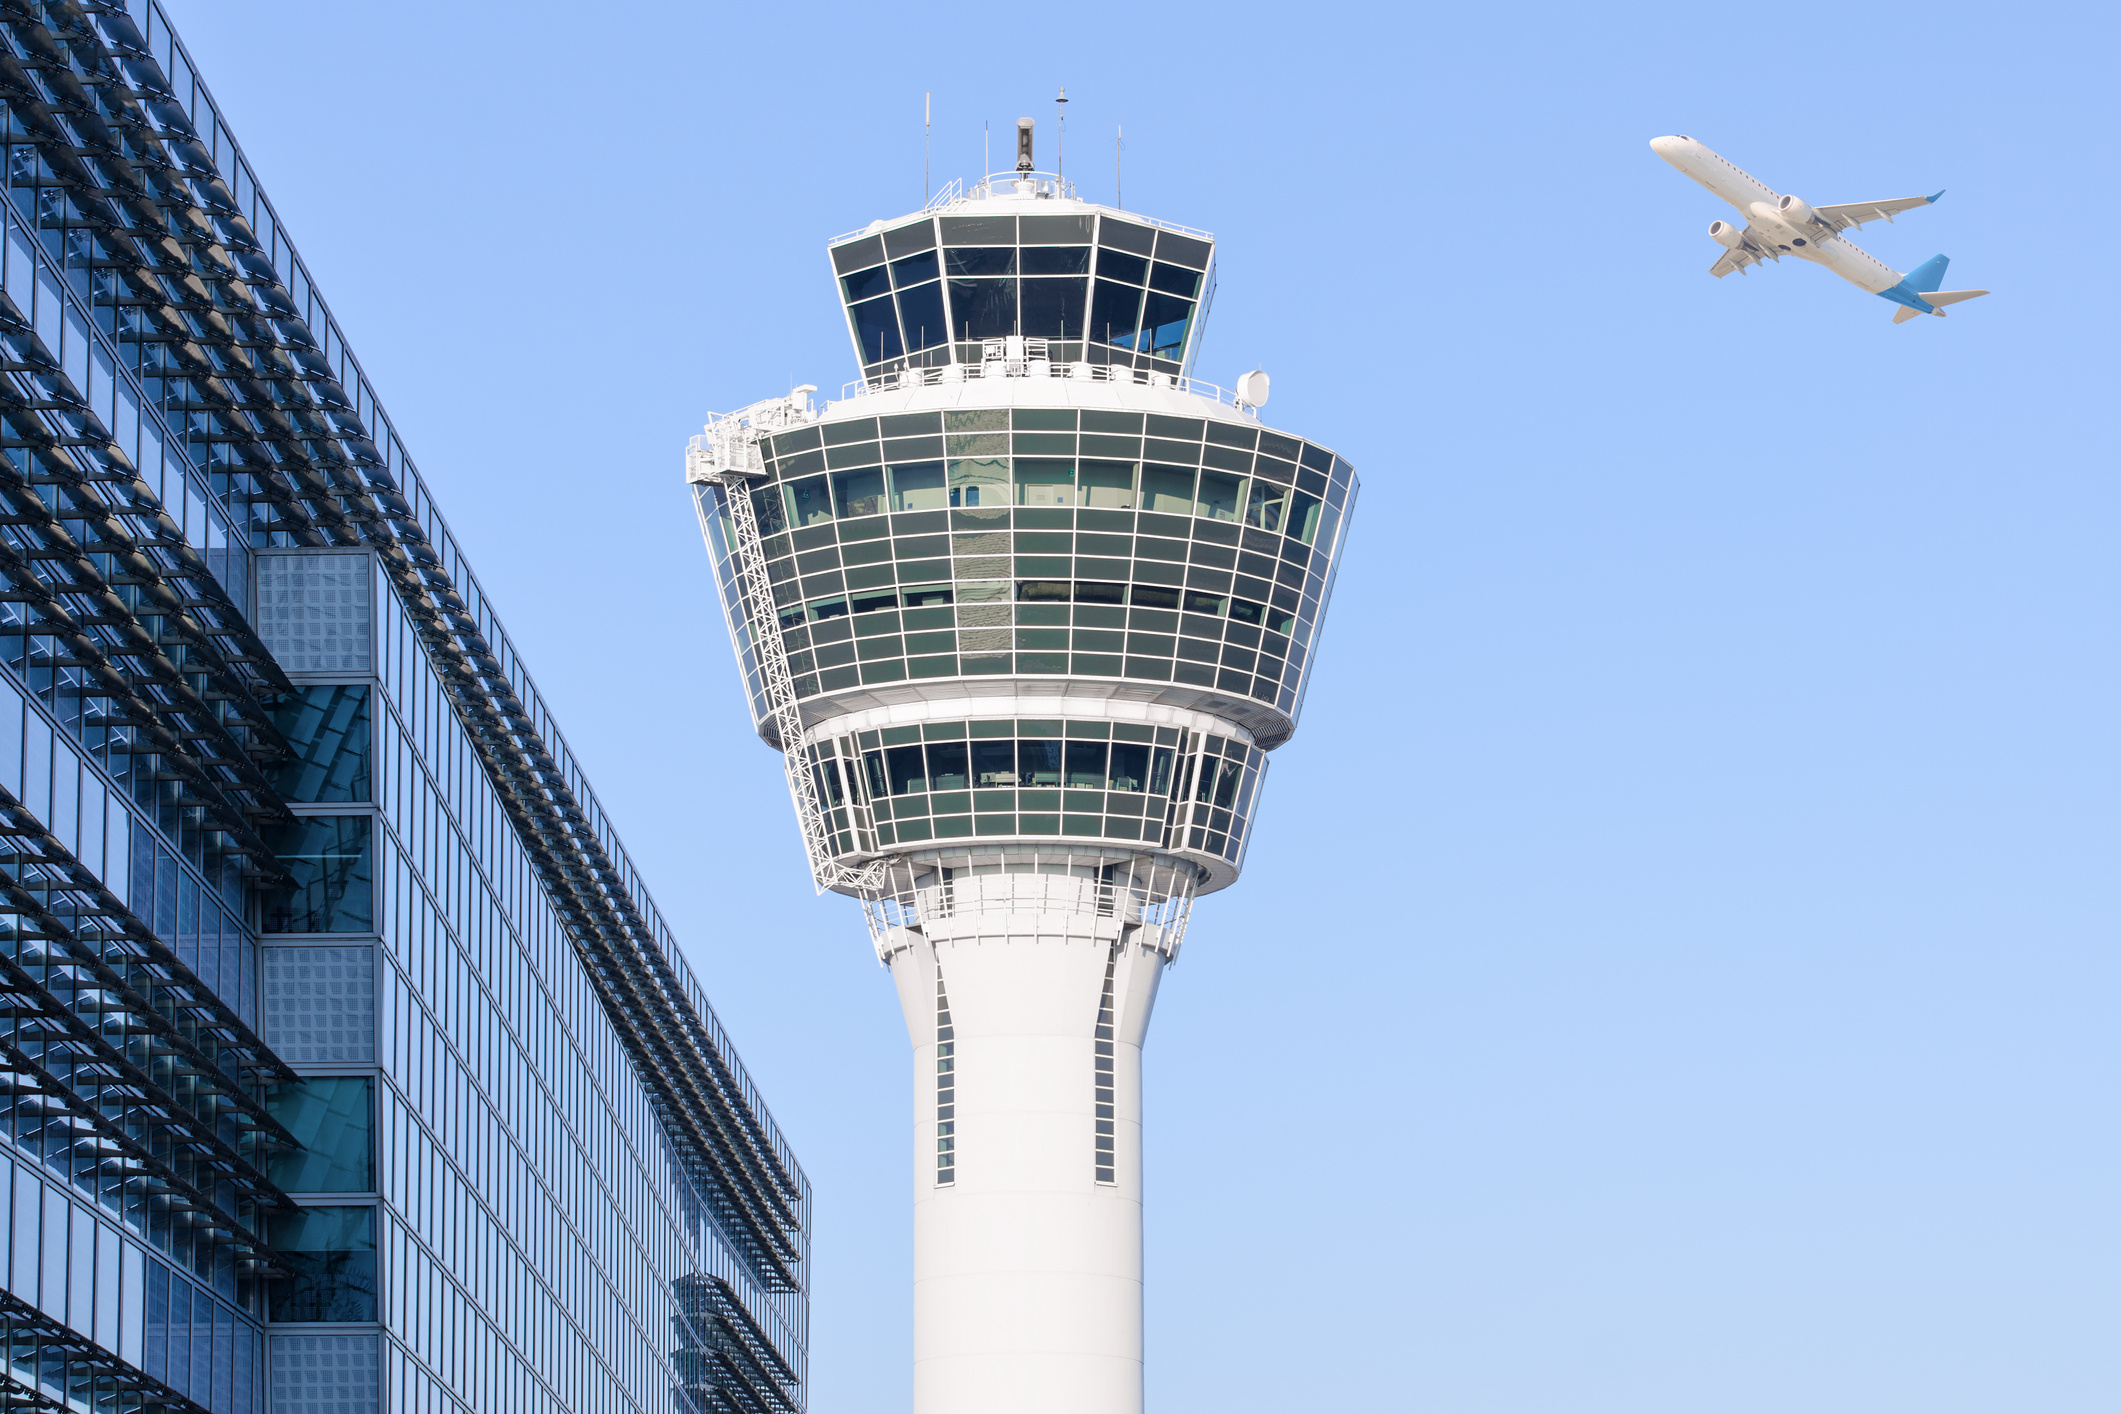 Munich Airport control tower, Business traveler, 2130x1420 HD Desktop